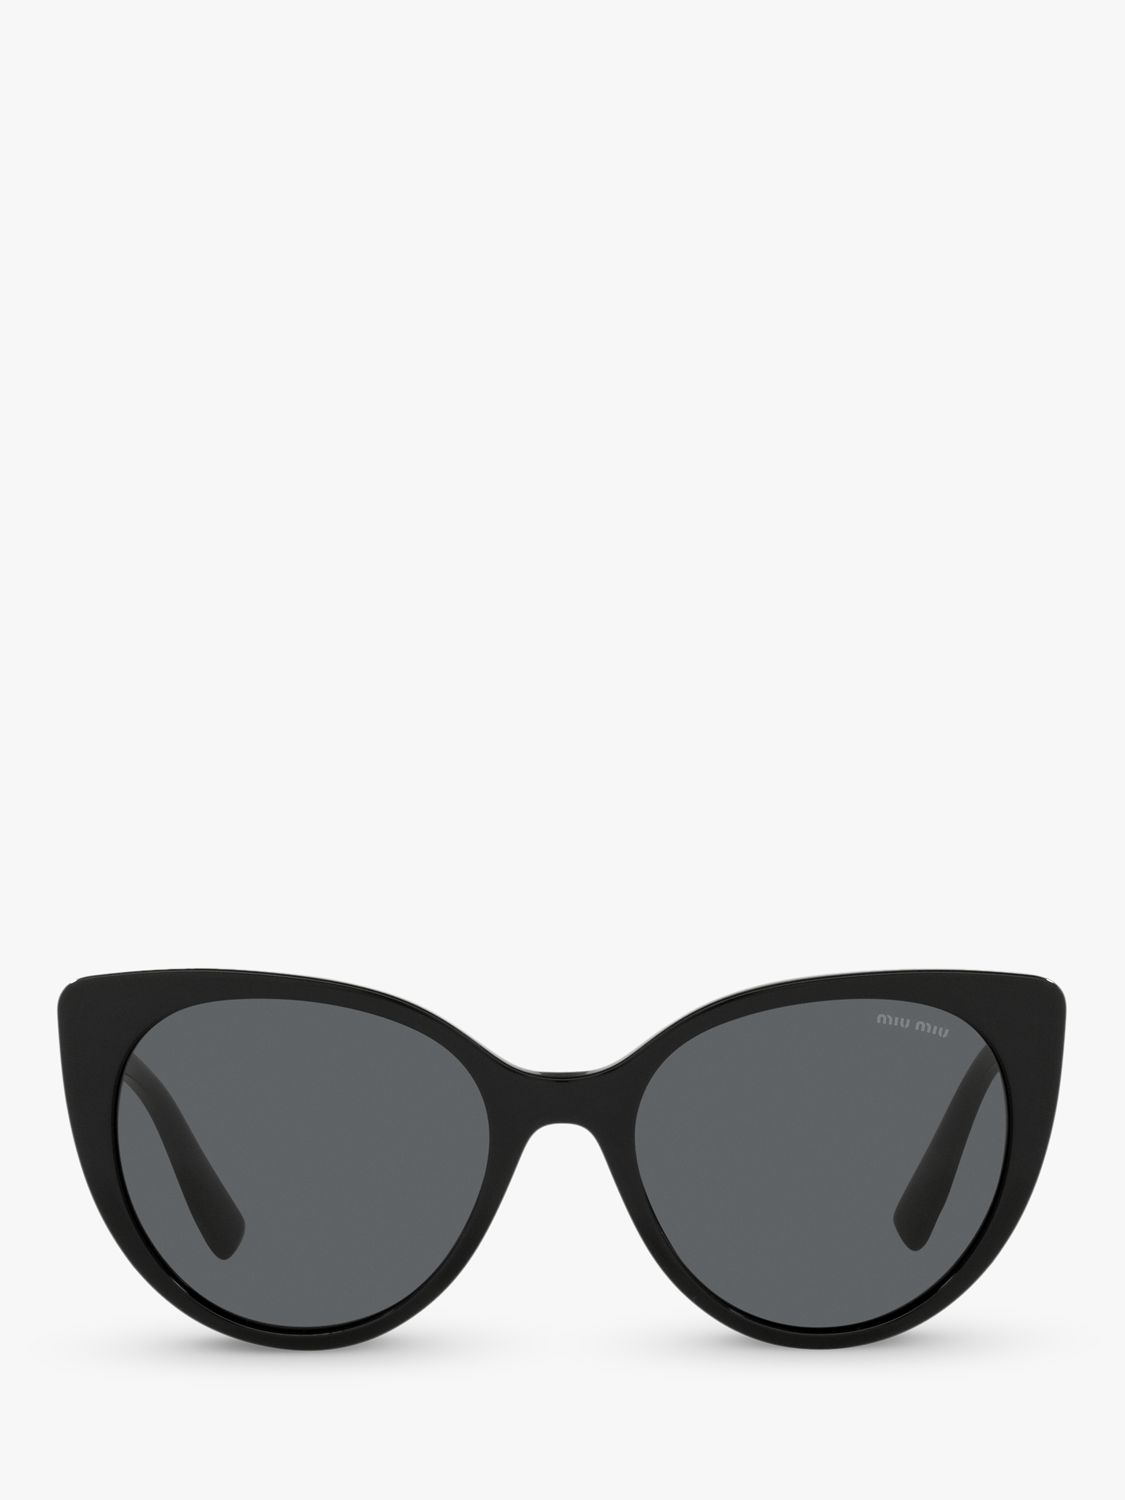 Miu Miu MU 04XS Women's Cat's Eye Sunglasses, Black/Grey at John Lewis ...